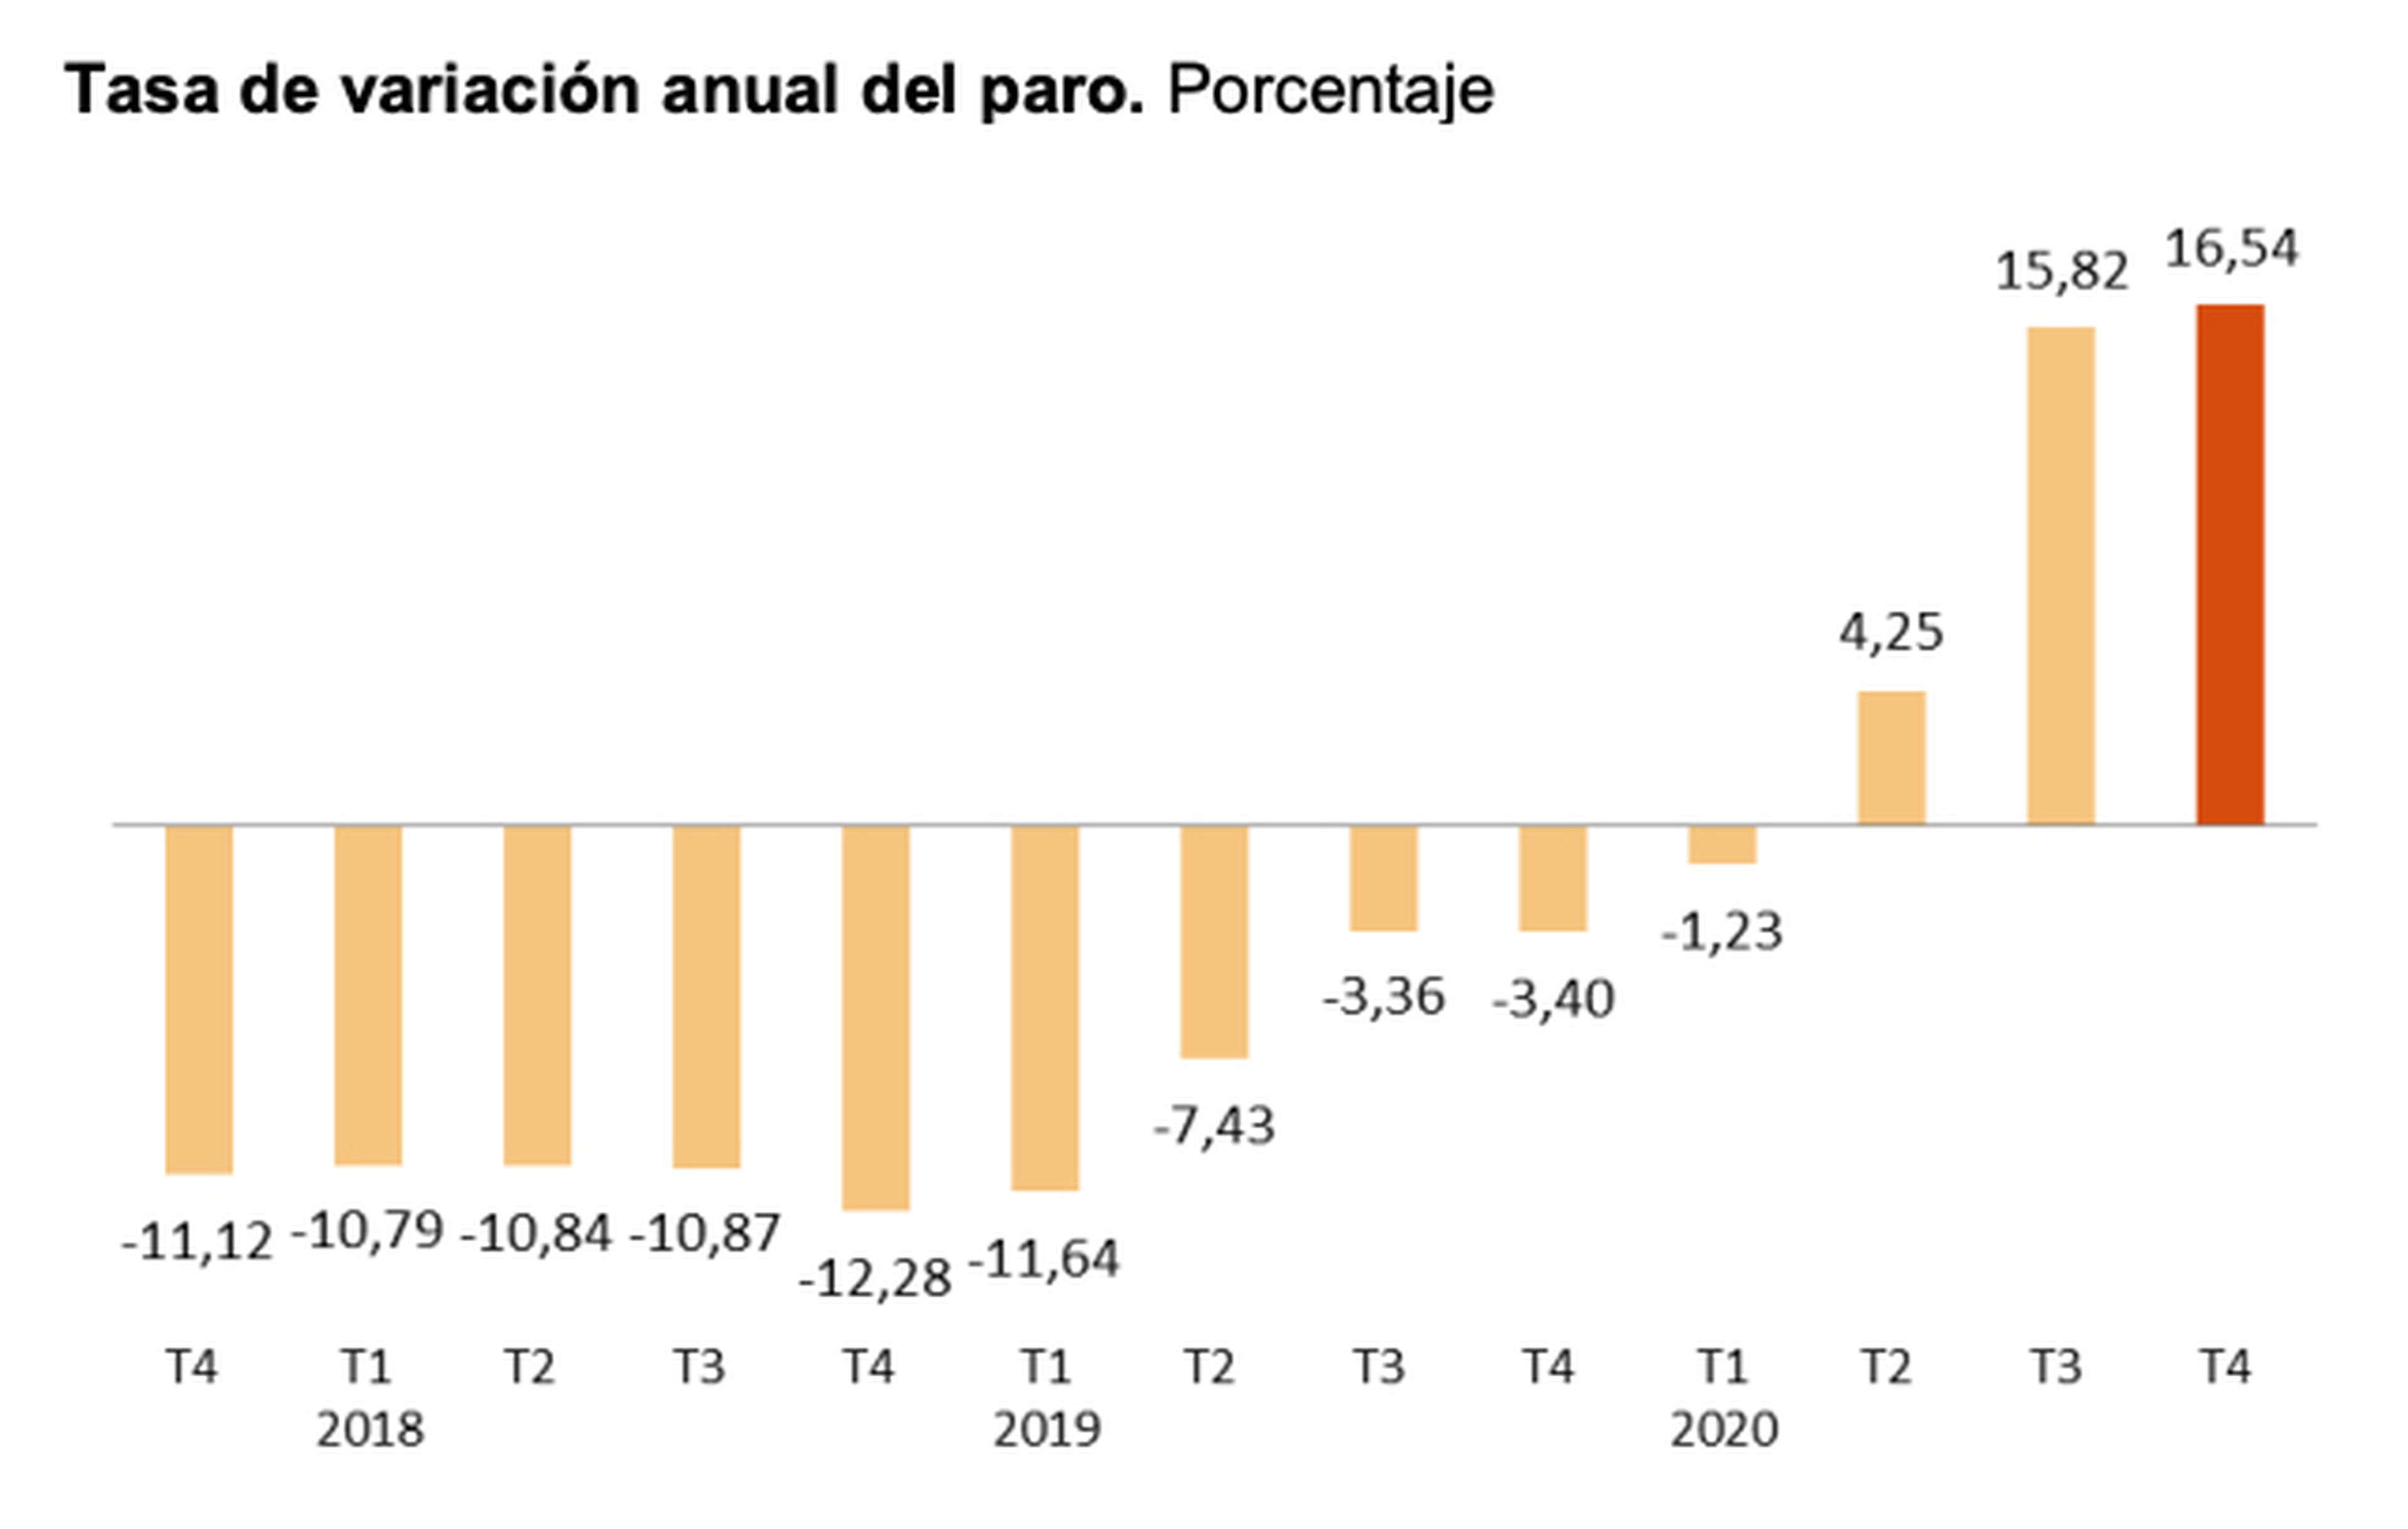 Evolución anual del paro en España entre 2018 y 2020